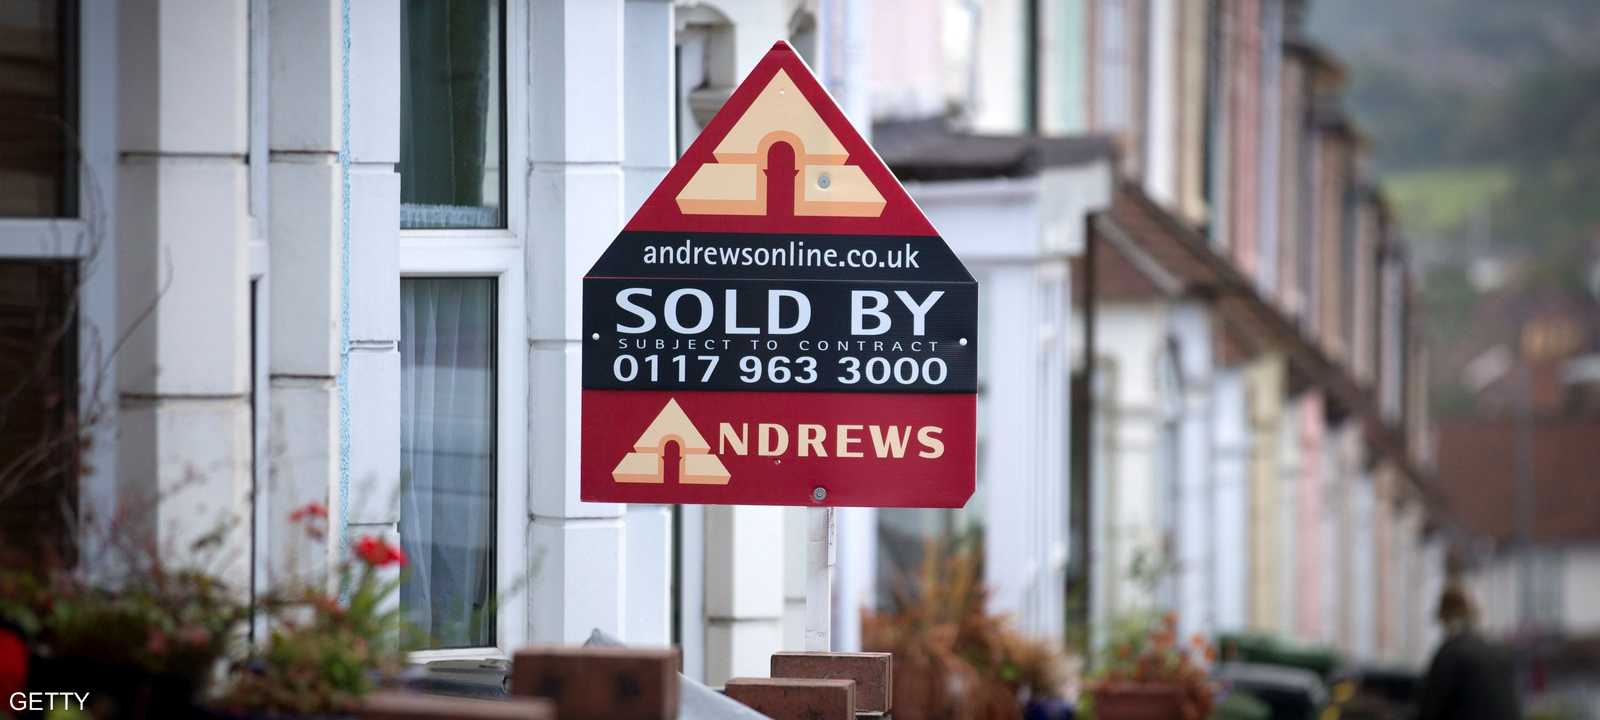 أسعار المنازل في بريطانيا مرتفعة والبنوك ترفض تقديم القروض من دون ضمانات مناسبة